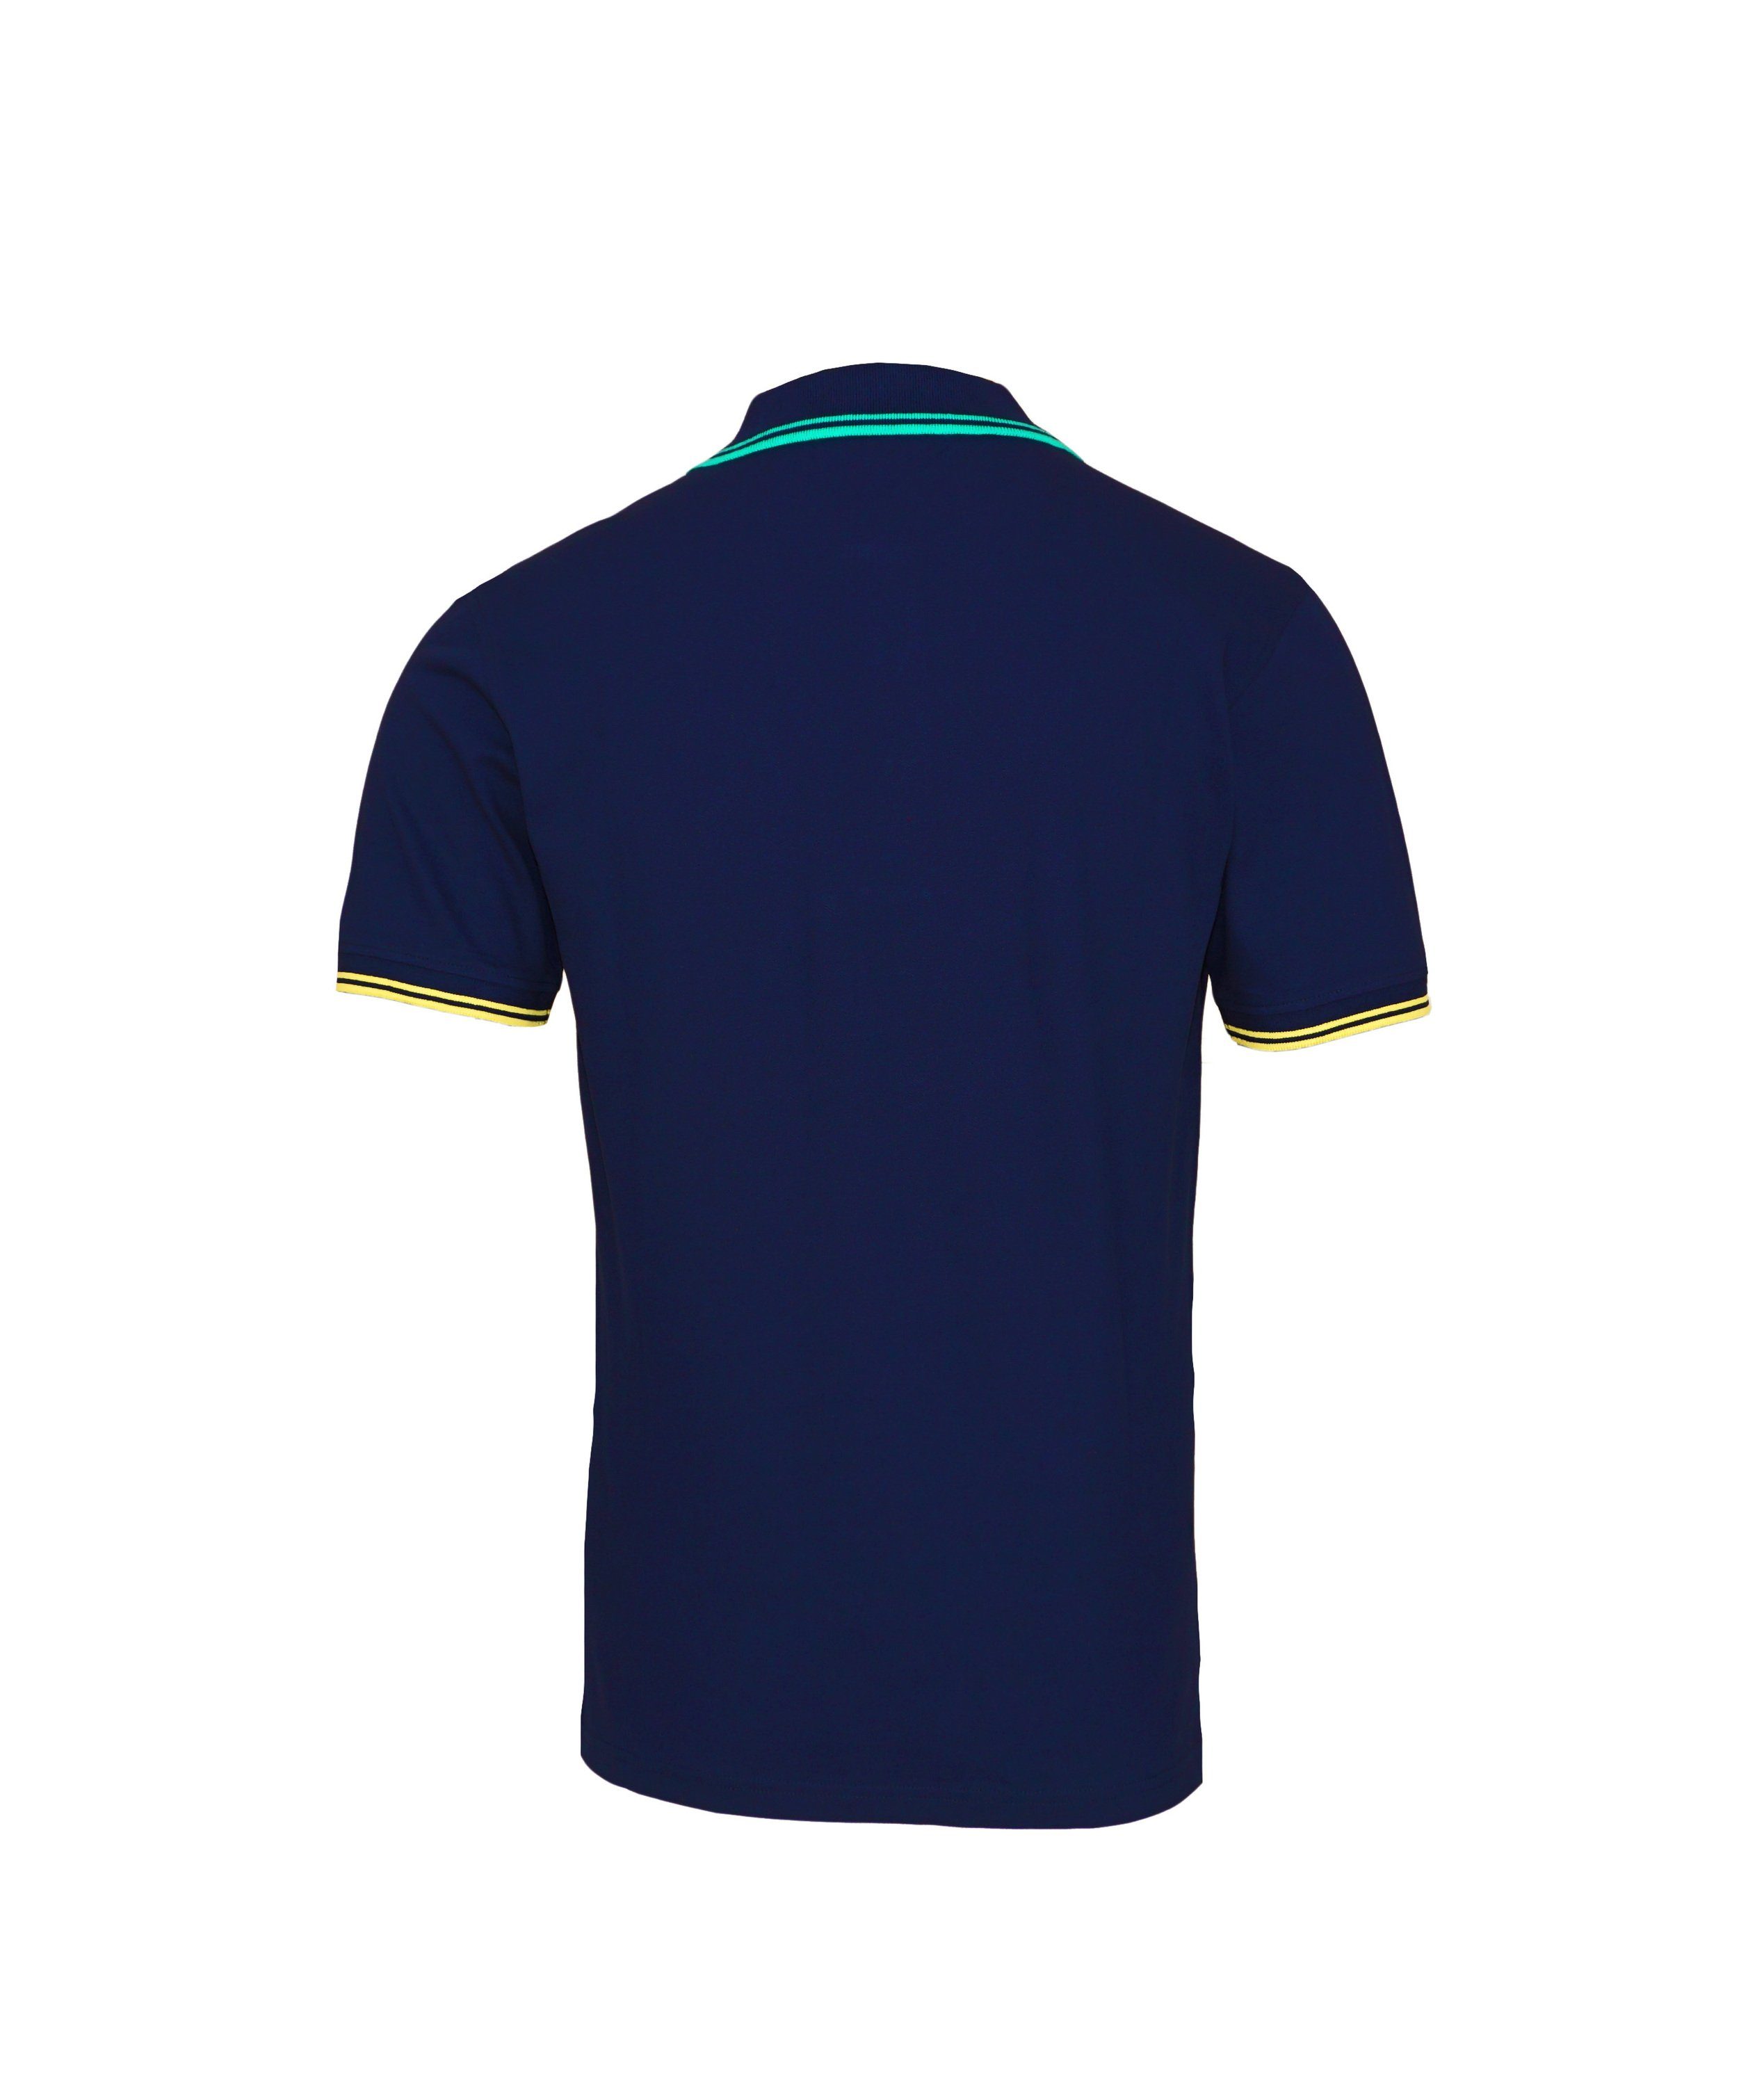 (1-tlg) Shirt dunkelblau Assn BARNEY Poloshirt Polohemd U.S. Poloshirt Shirt Polo